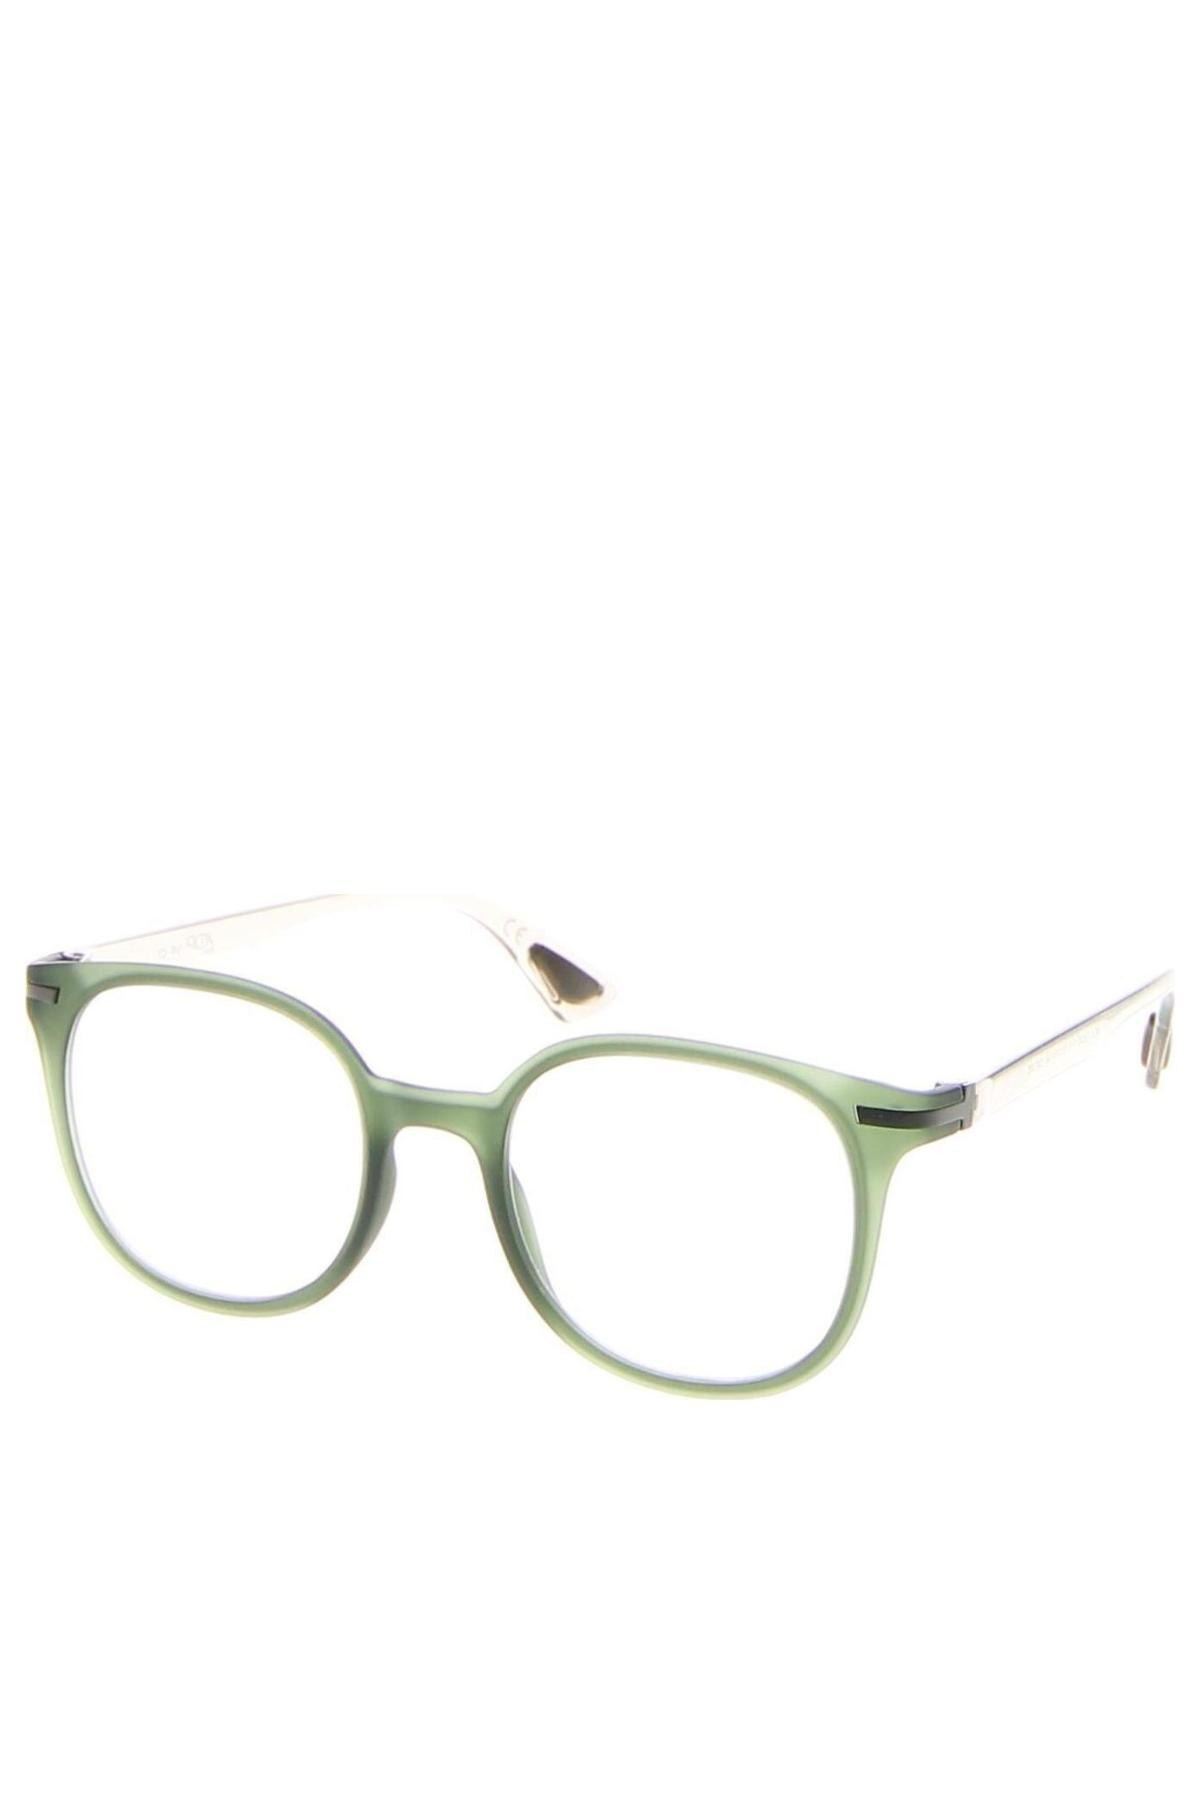 Szemüvegkeretek AirDP, Szín Zöld, Ár 39 355 Ft